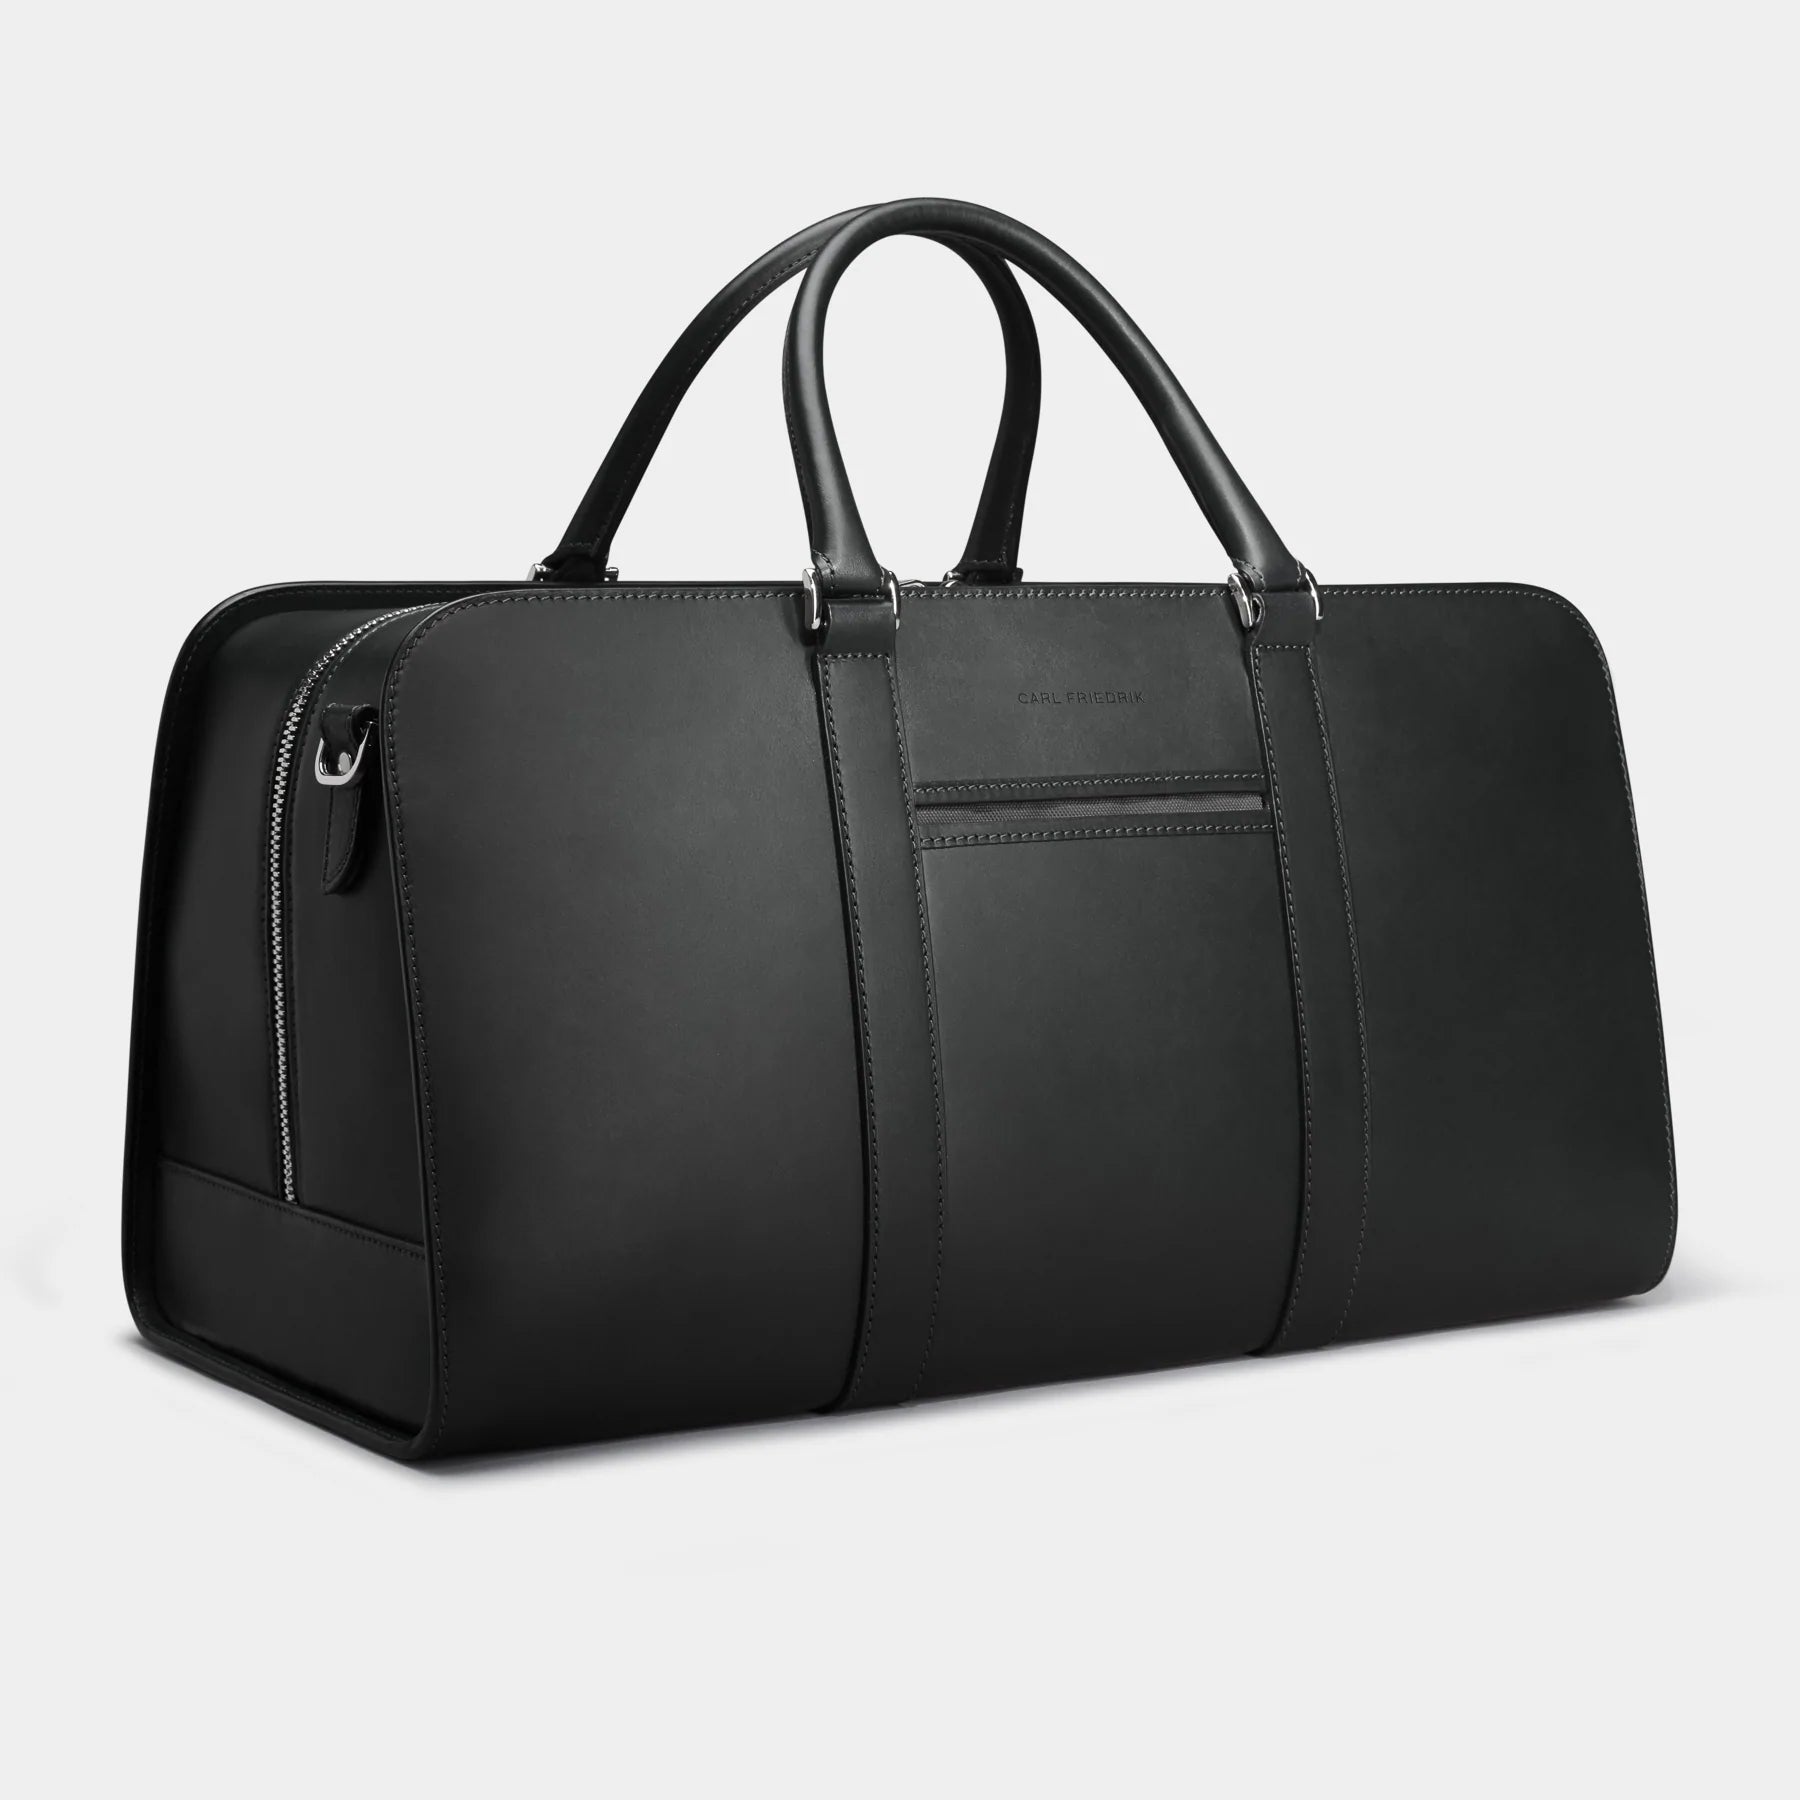 Palissy Weekend - Return Black / Grey Leather weekend bag - Good Condition 